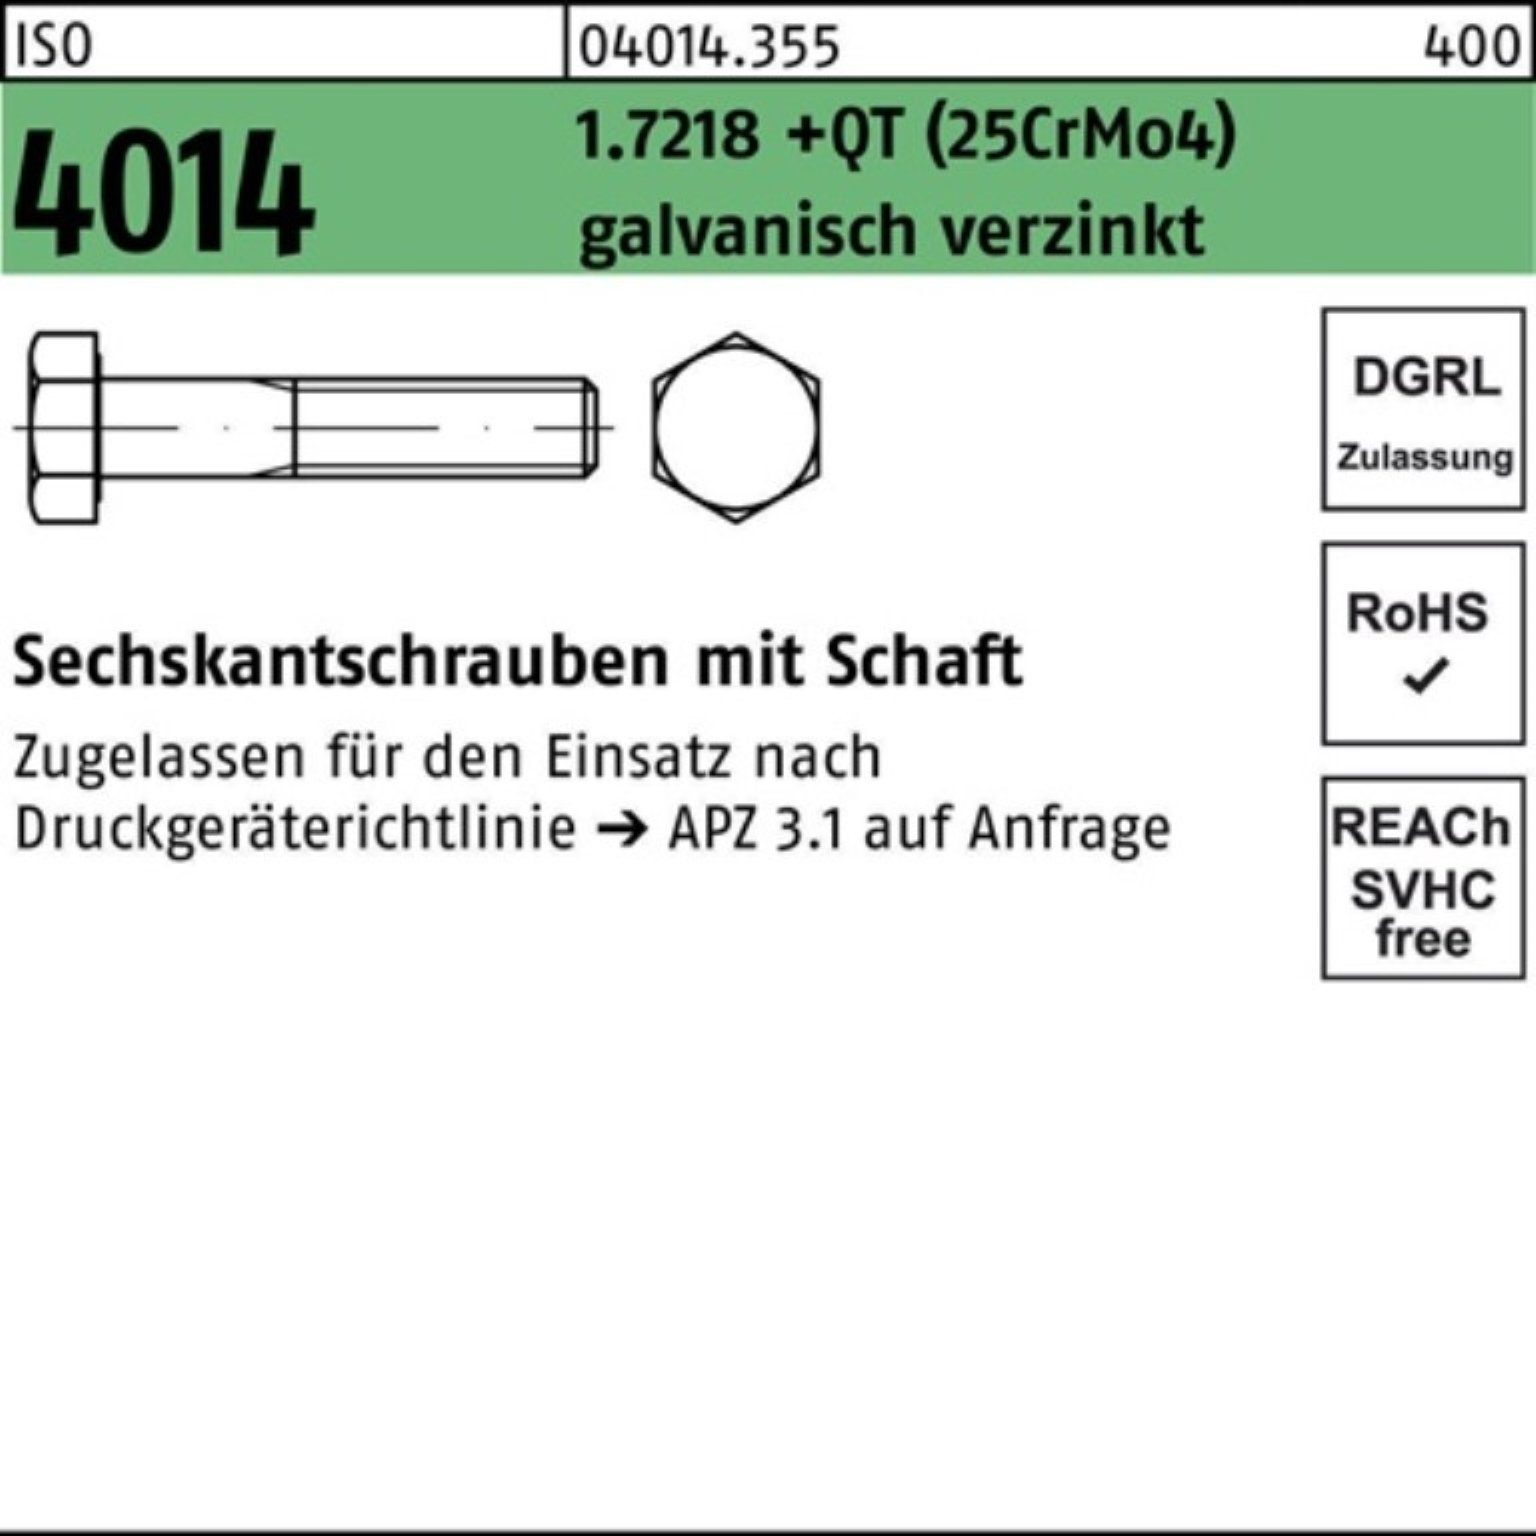 Bufab Sechskantschraube 1.7218 ISO Schaft Pack Sechskantschraube 100er M36x180 +QT 4014 (25CrM